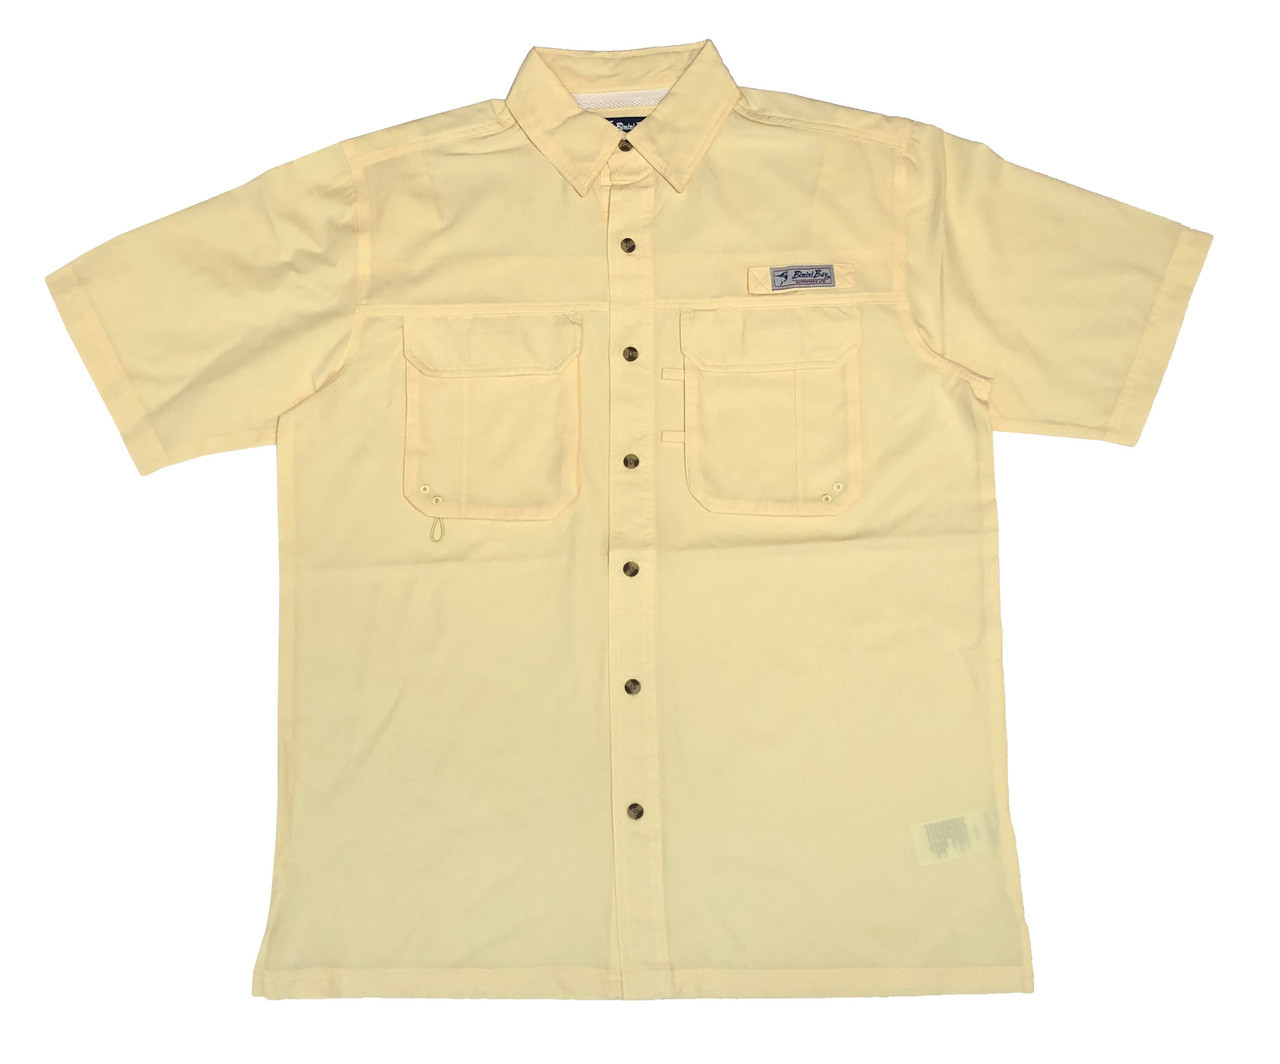 Bimini Bay Outfitters Bimini Flats V Short Sleeve Shirt